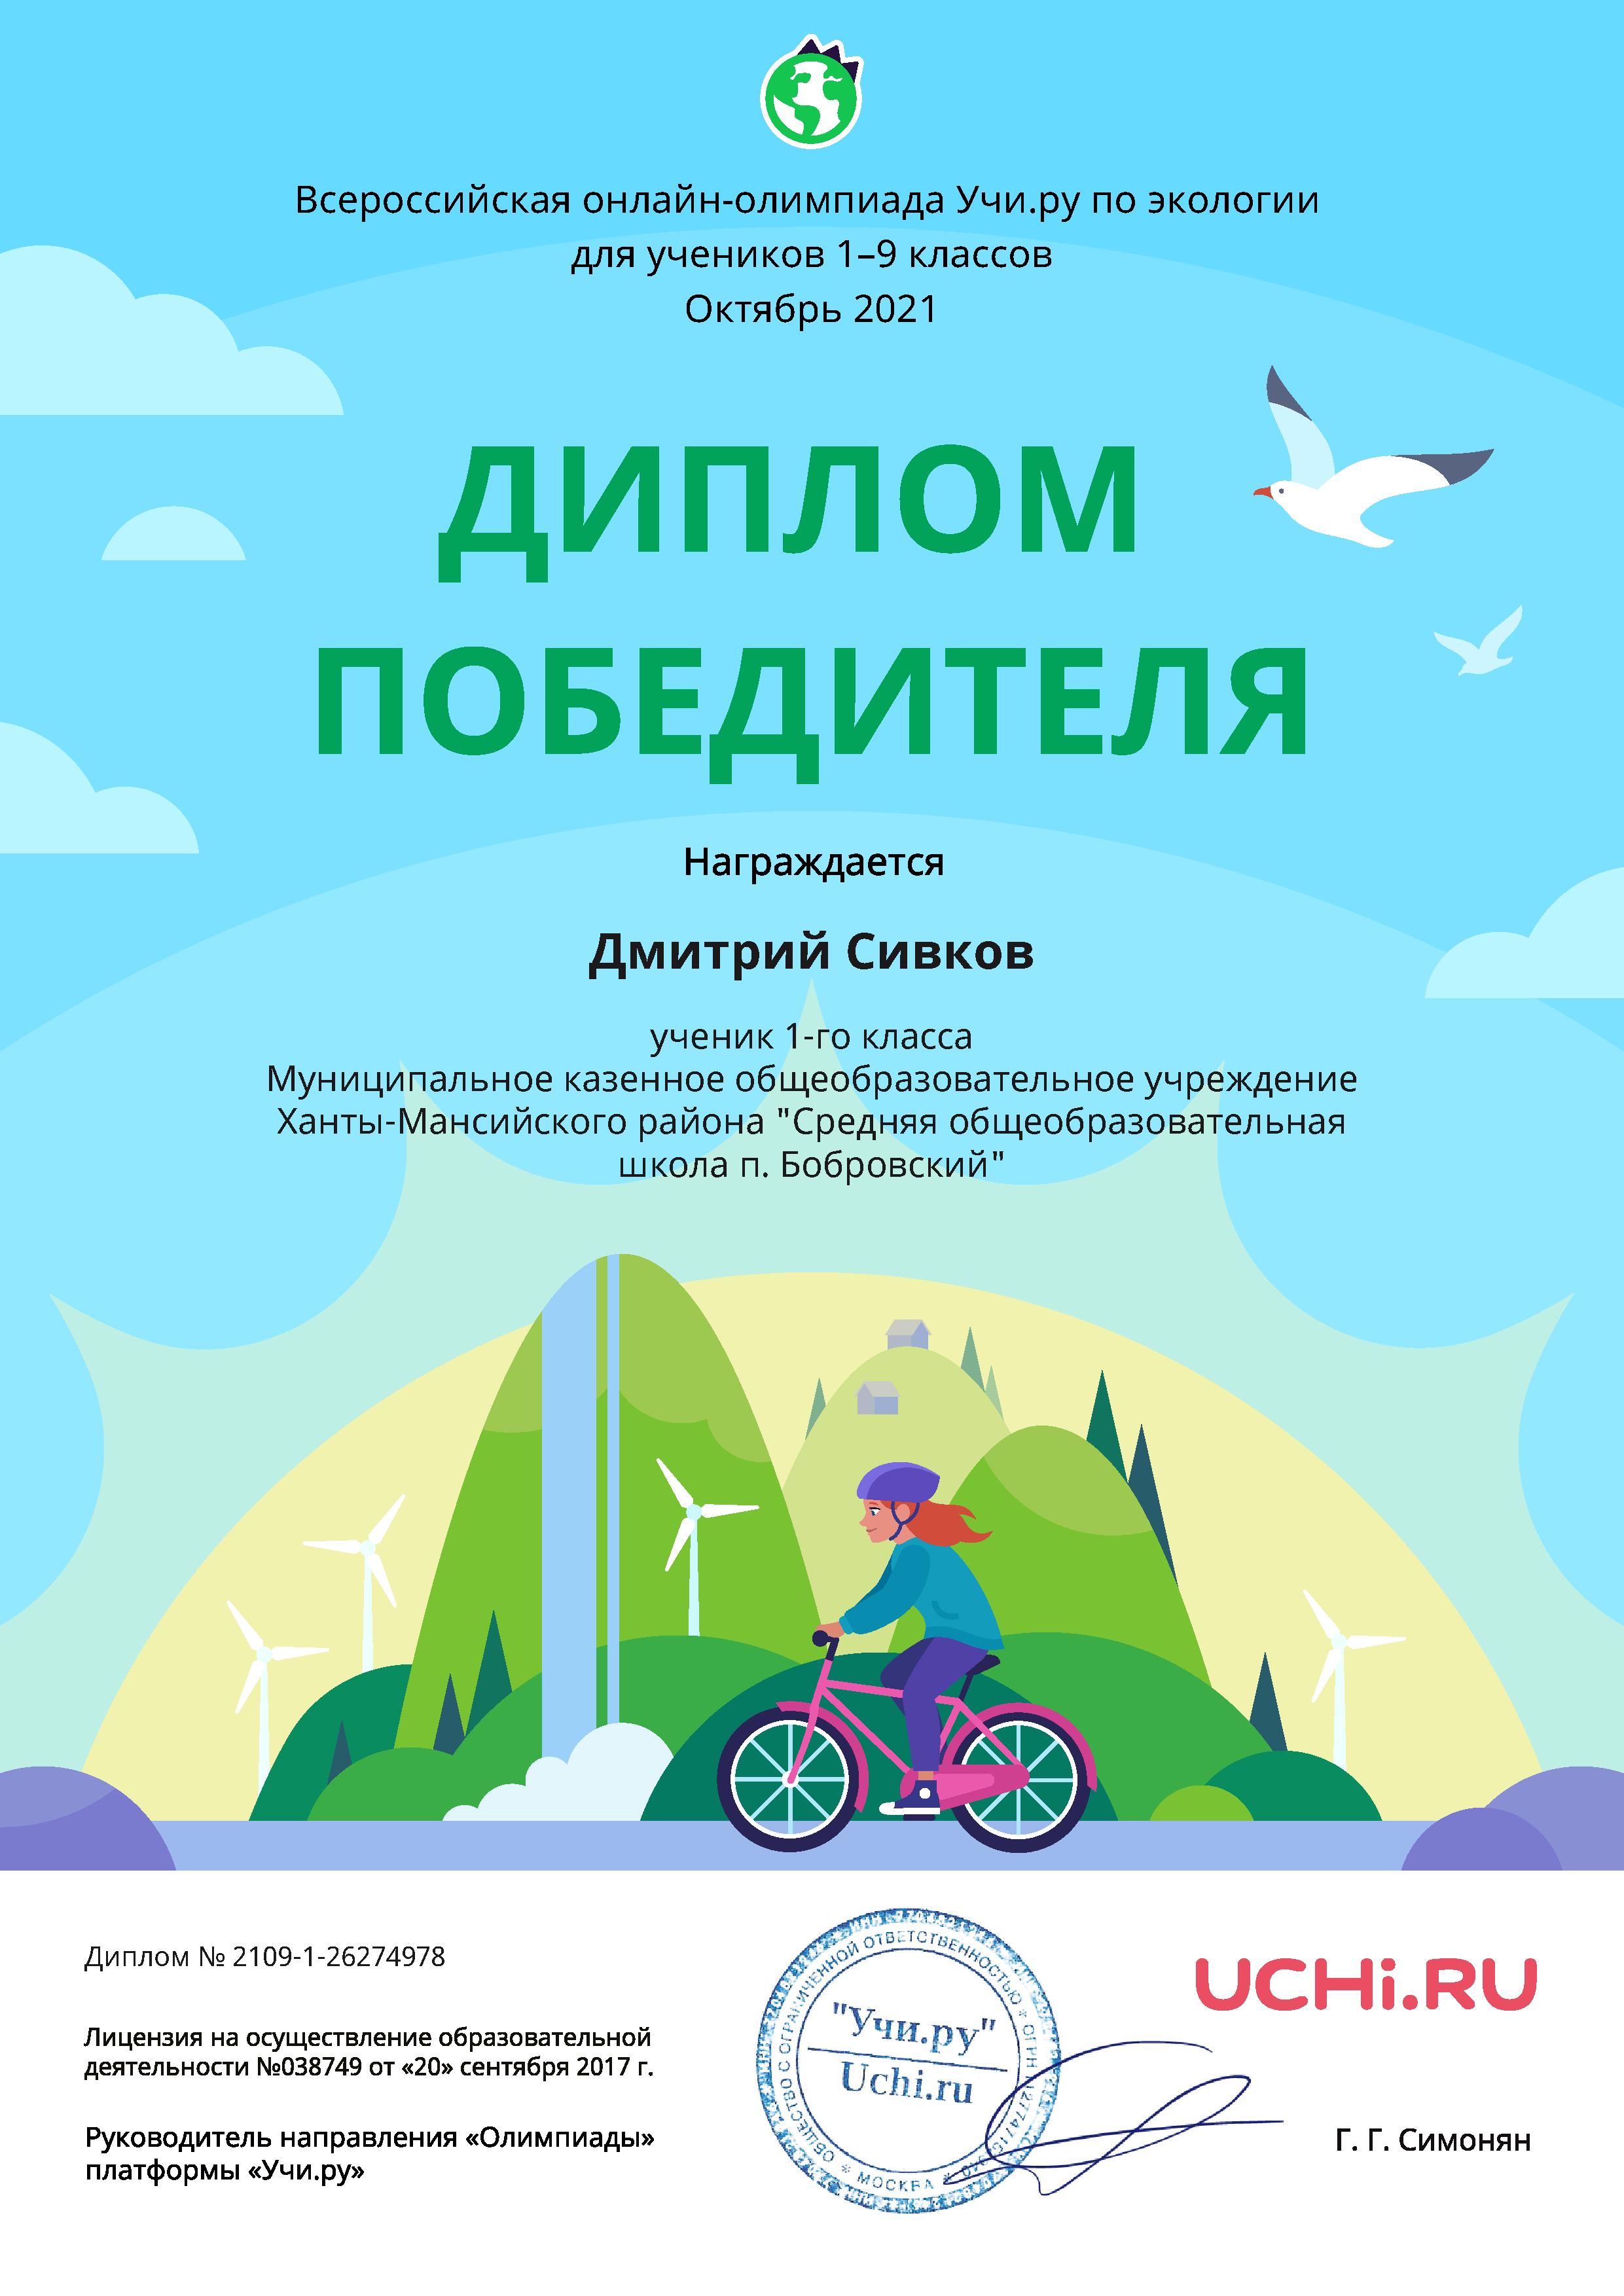 Сивков Д. Диплом победителя. Всероссийская онлайн-олимпиада по экологии. 2021